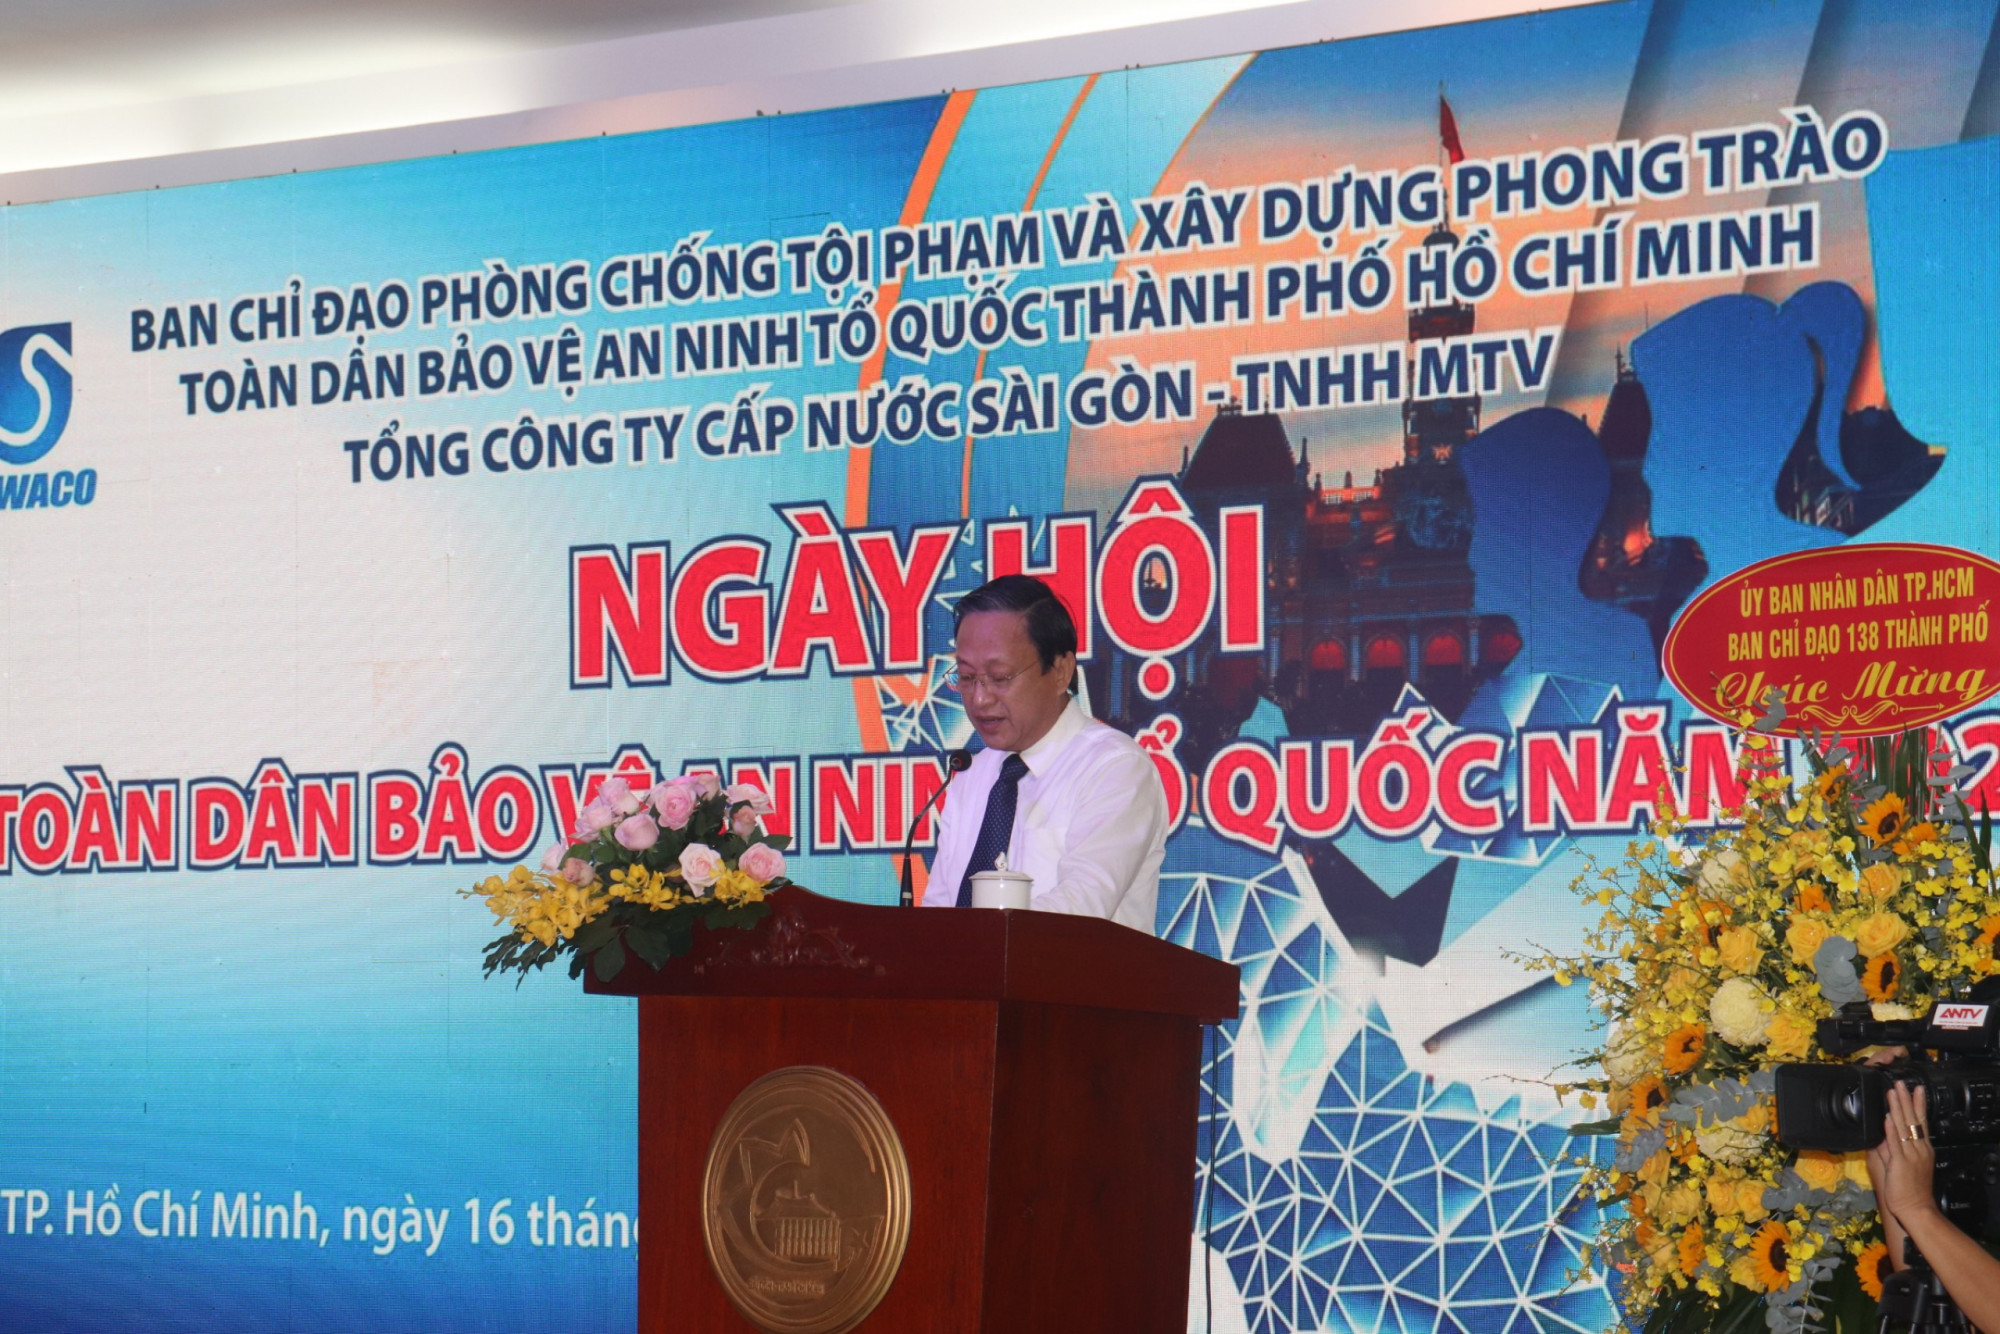 Ông Nguyễn Thanh Sử - Phó tổng giám đốc SAWACO phát biểu tại hội nghị